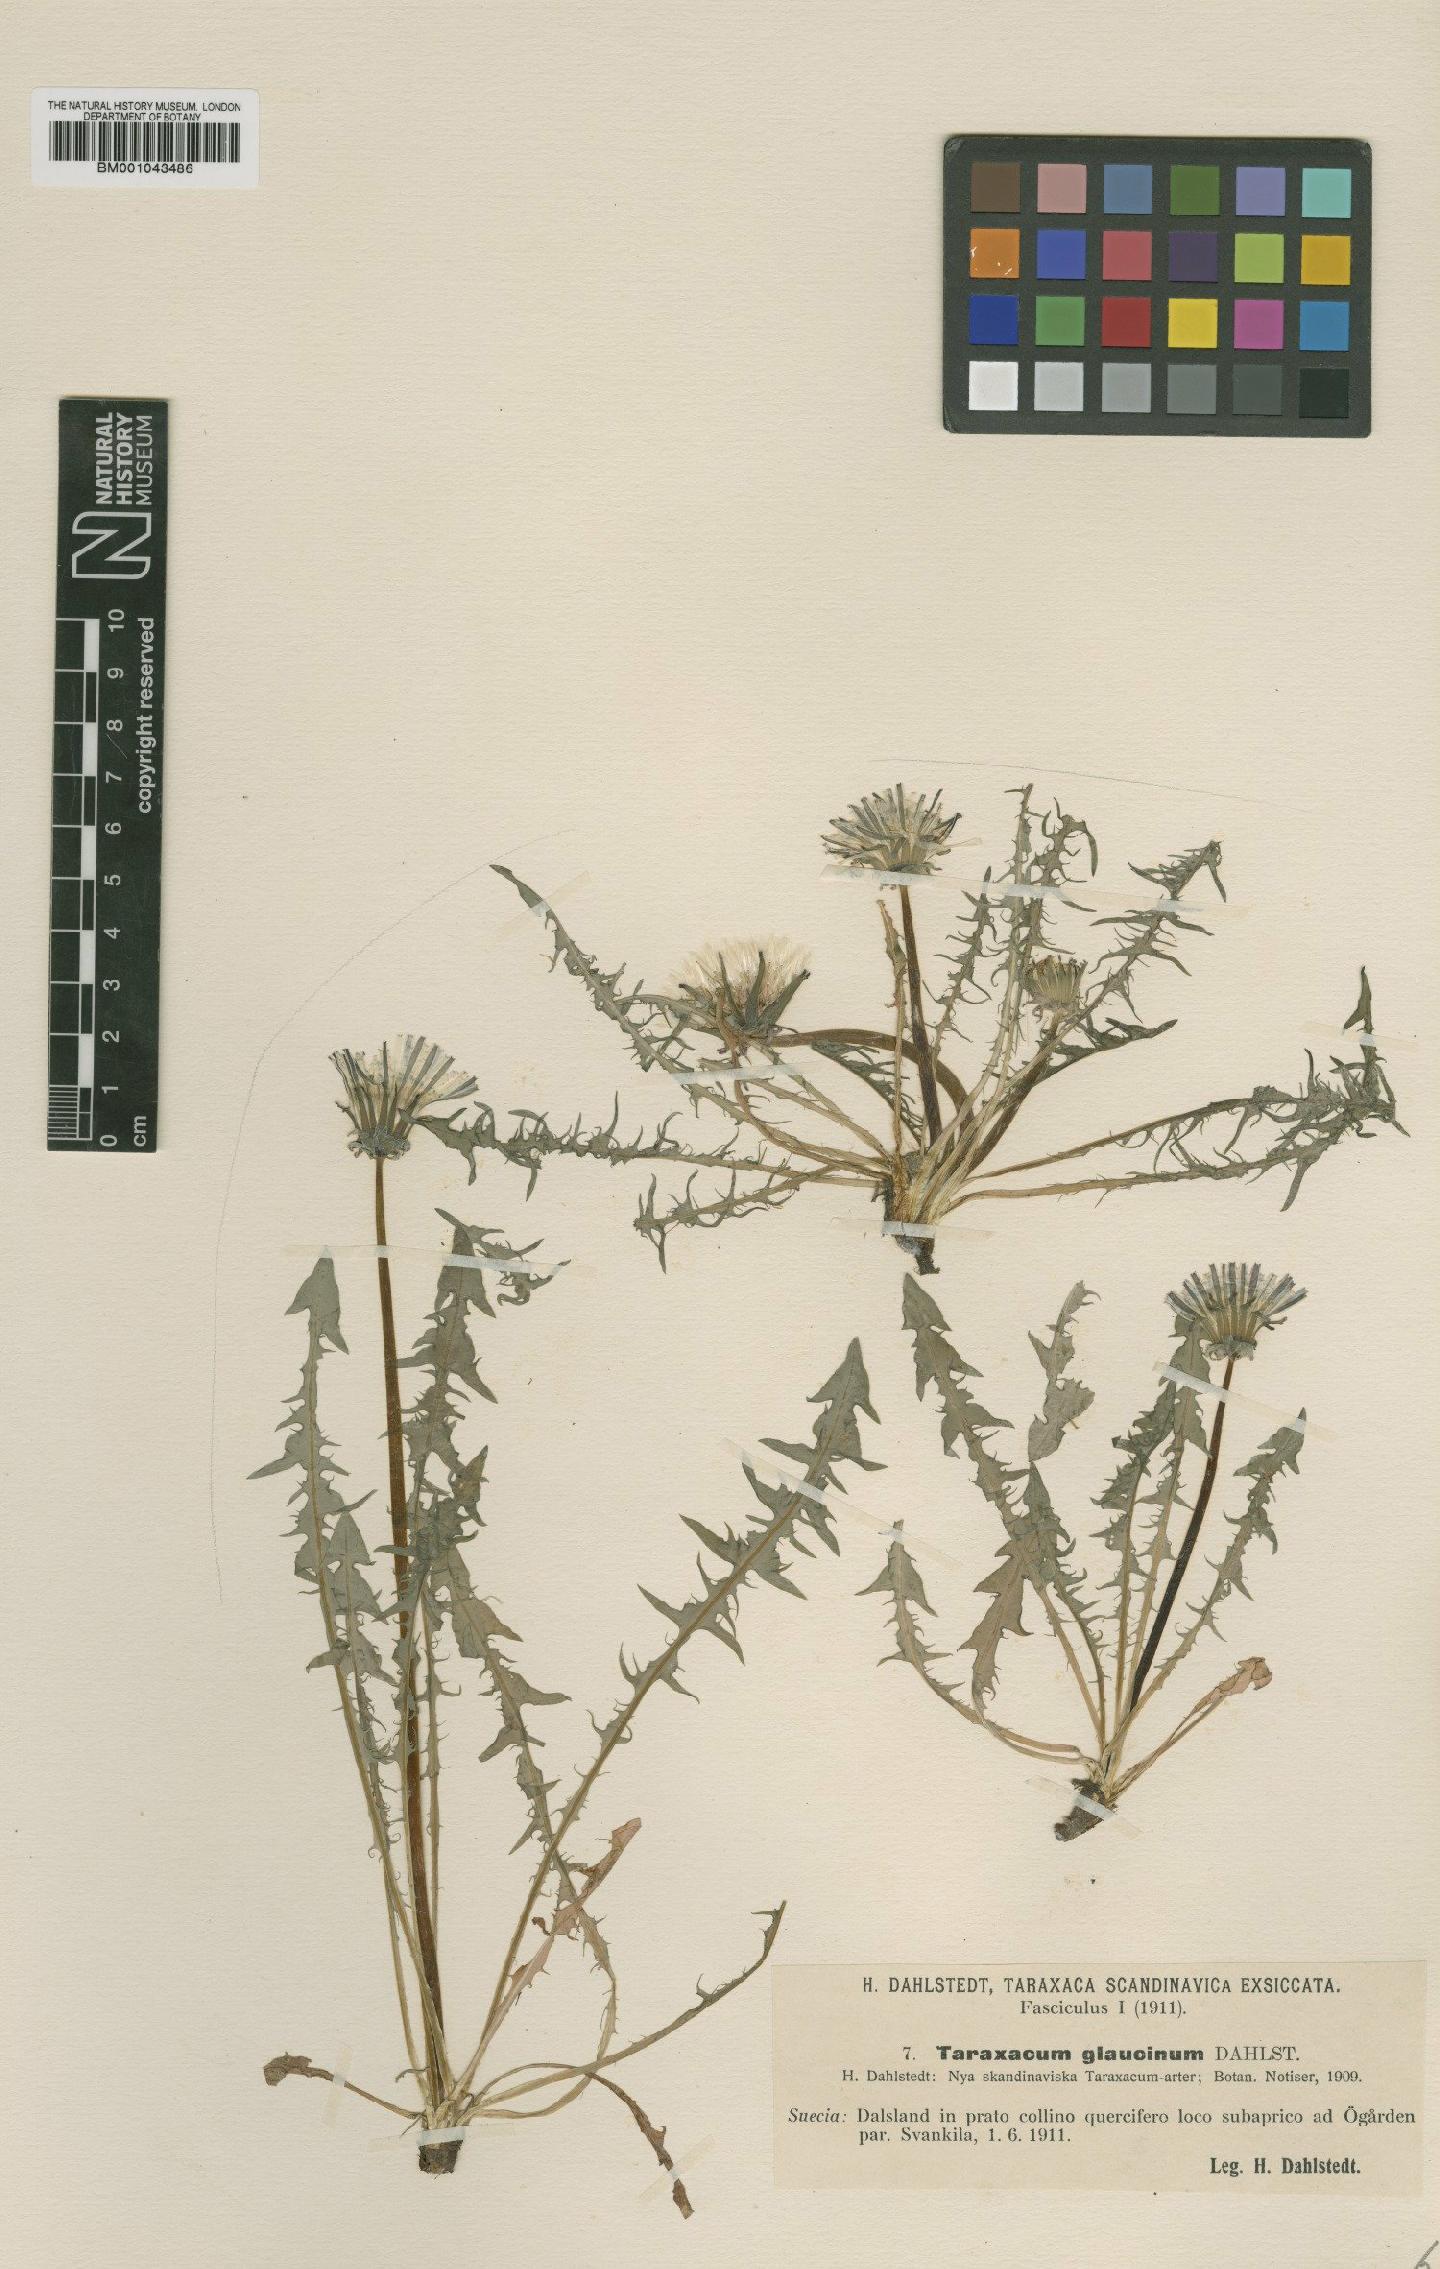 To NHMUK collection (Taraxacum glaucinum Dahlst.; Type; NHMUK:ecatalogue:1998639)